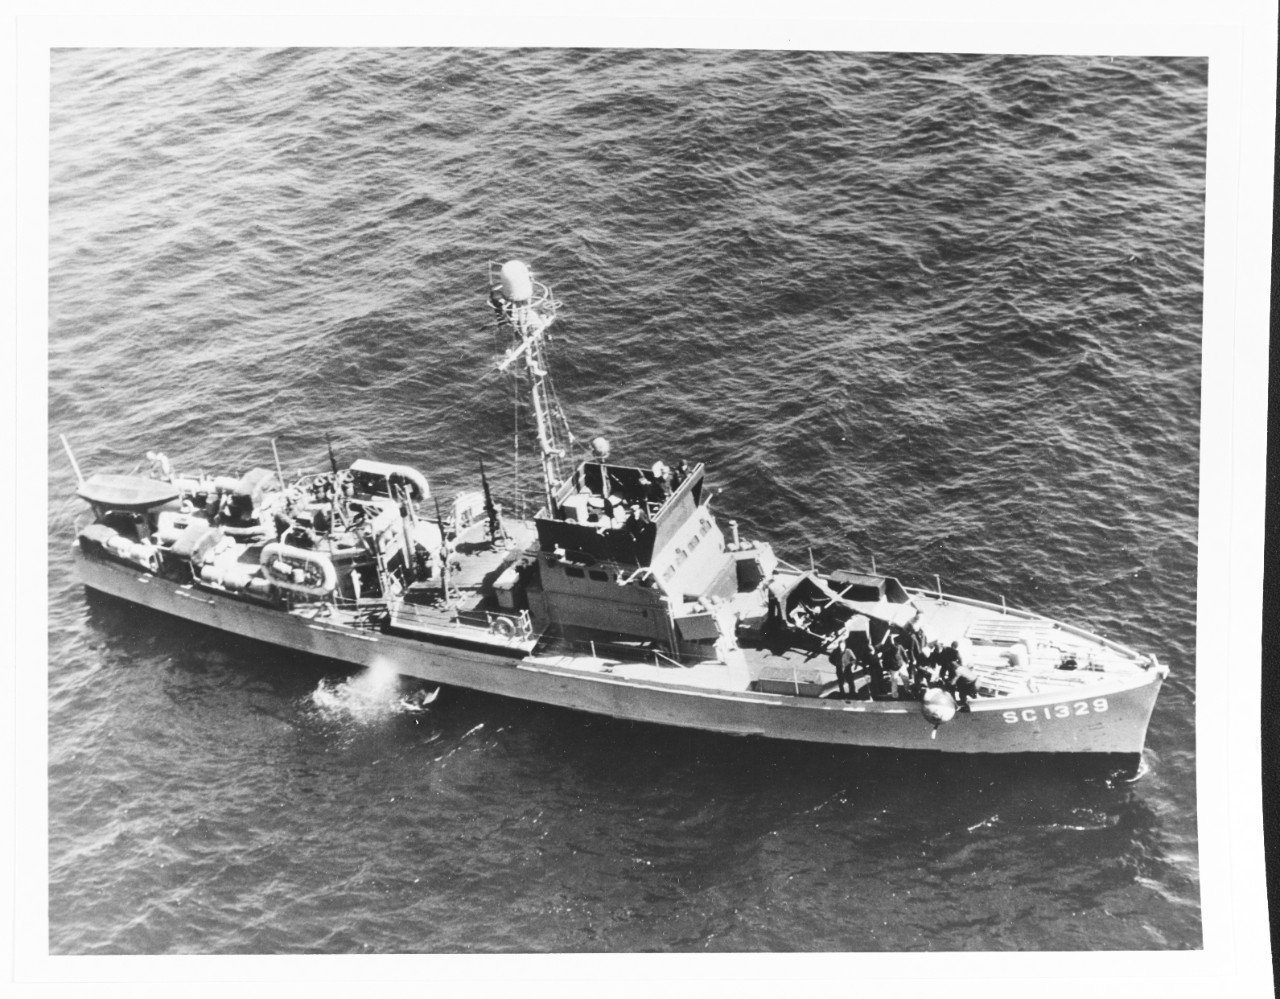 USS SC-1329